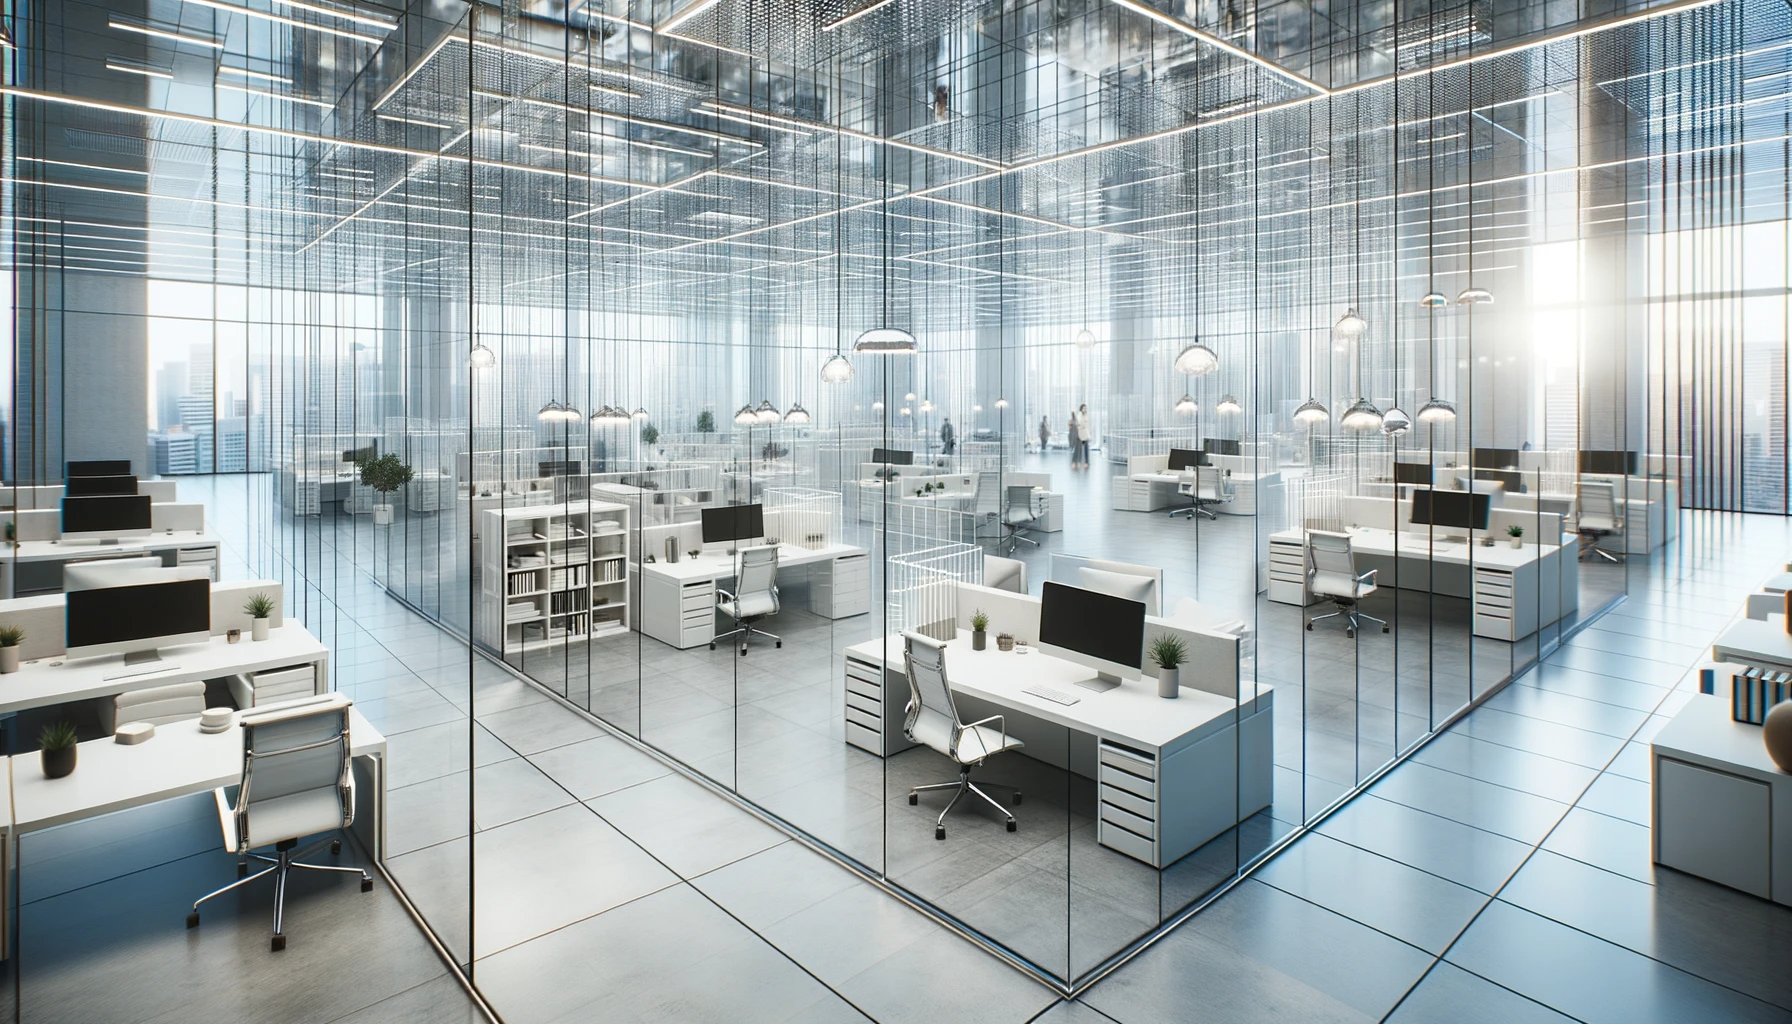  Divisiones para Oficinas Modernas: Claves del Diseño de Oficinas Modernas y Futuristas 